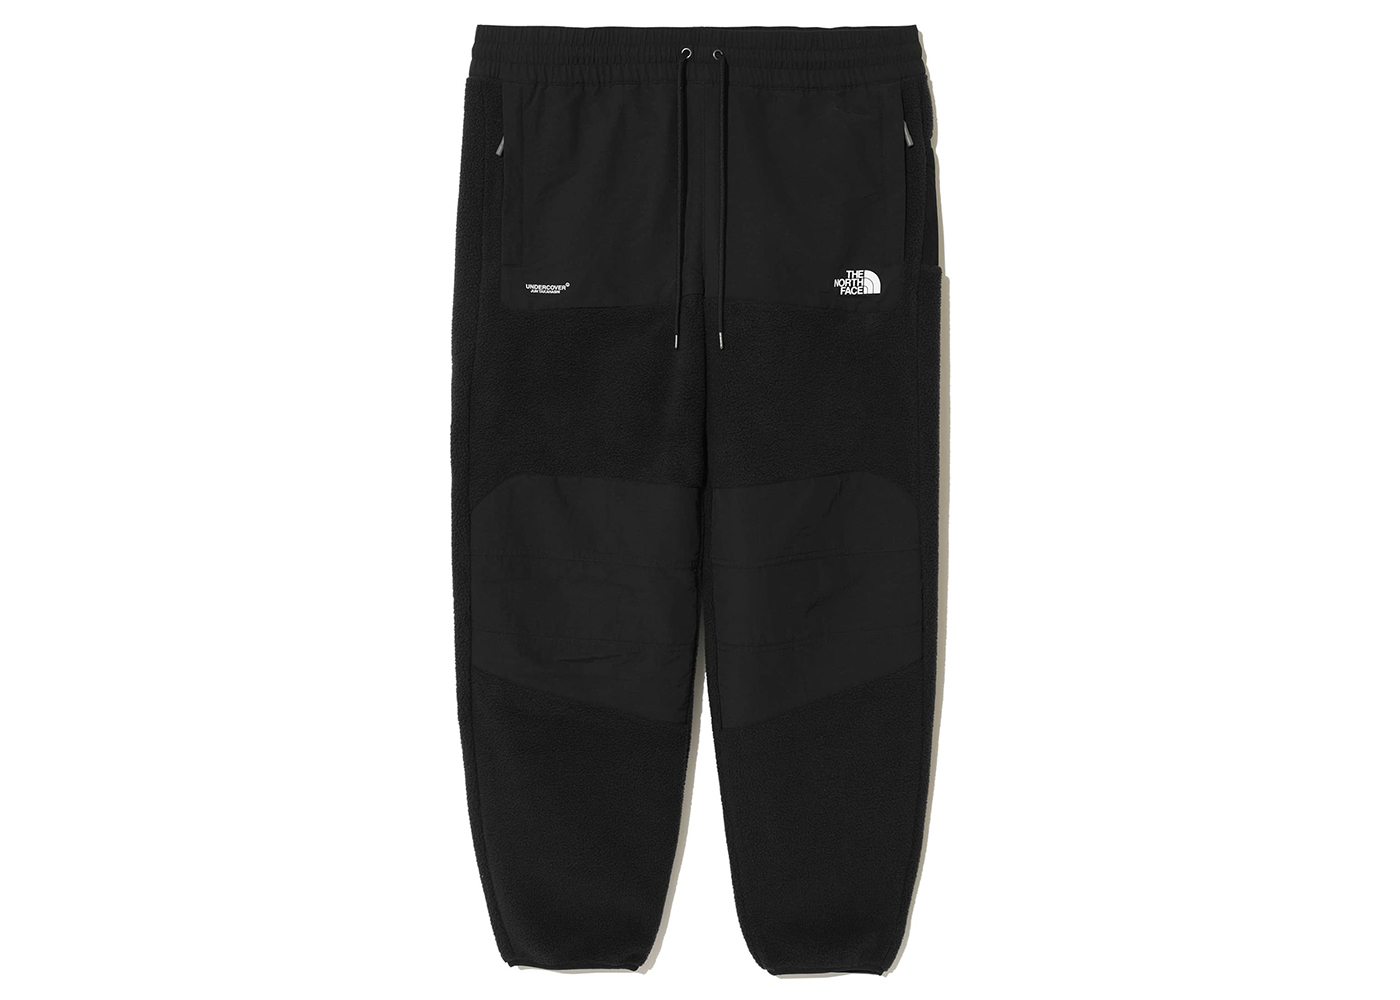 AND1 Men Trouser Track Pant Black Slim Fit Fleece Pant Active Wear Sweat  Pant S | Clothes design, Fleece pants, Fashion design